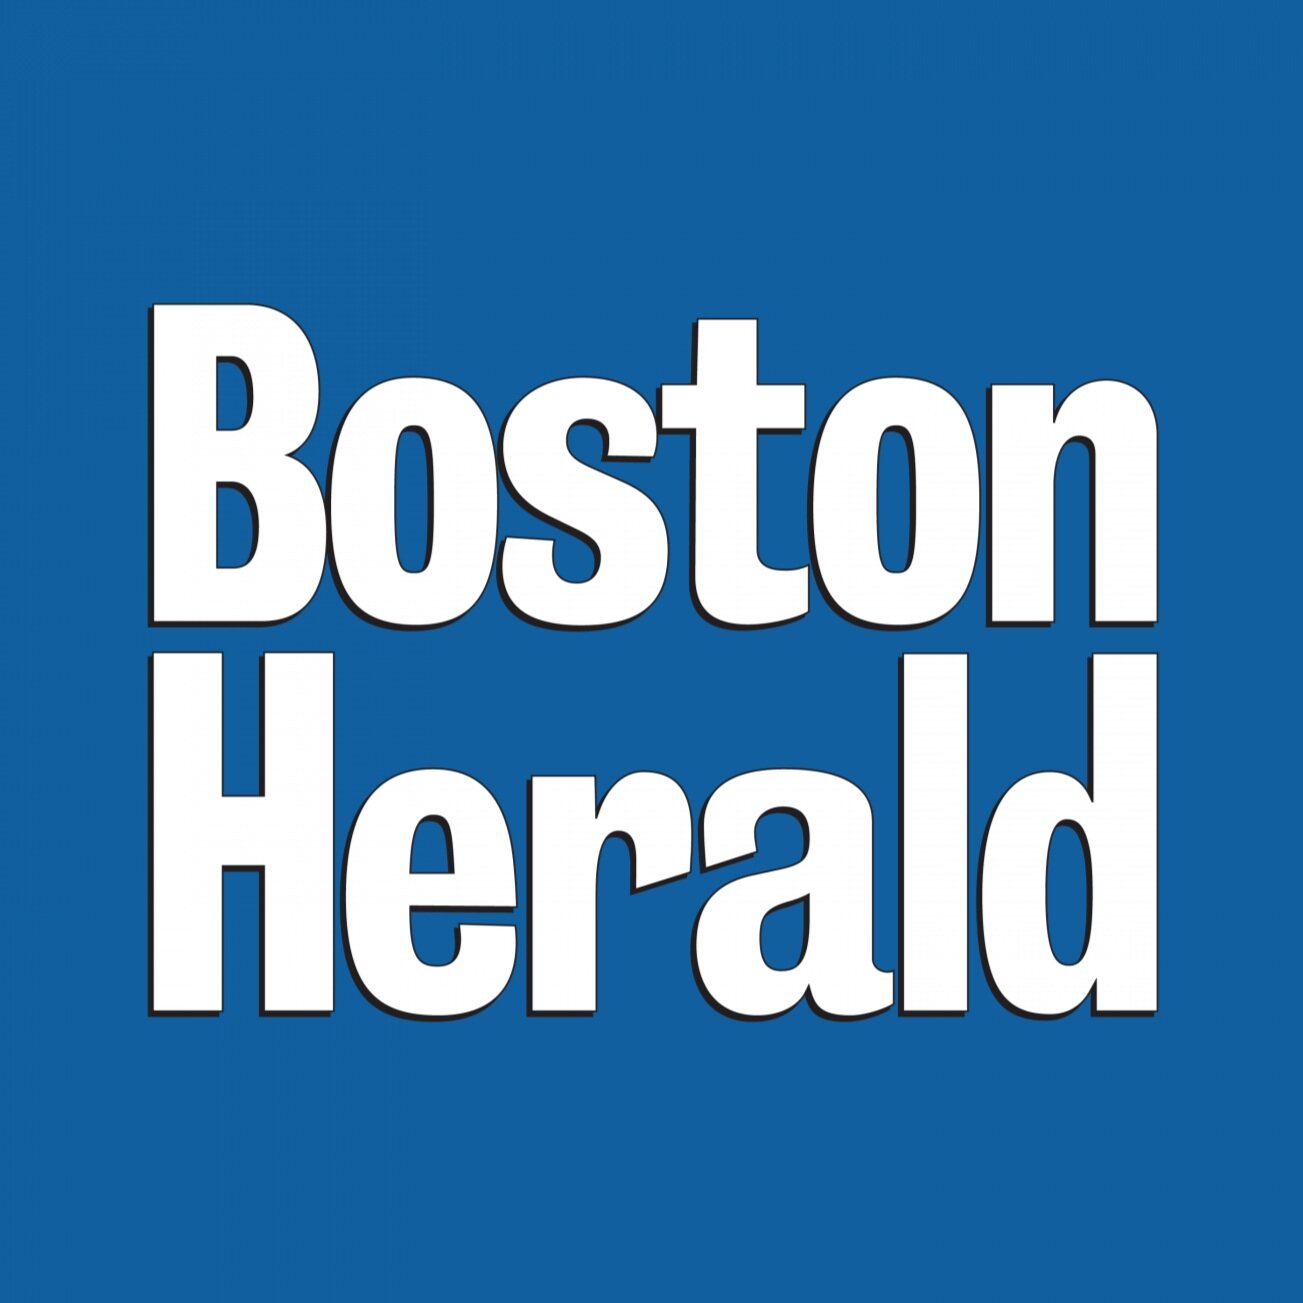 bostonherald-logo-3000x3000-1400x1400.jpg